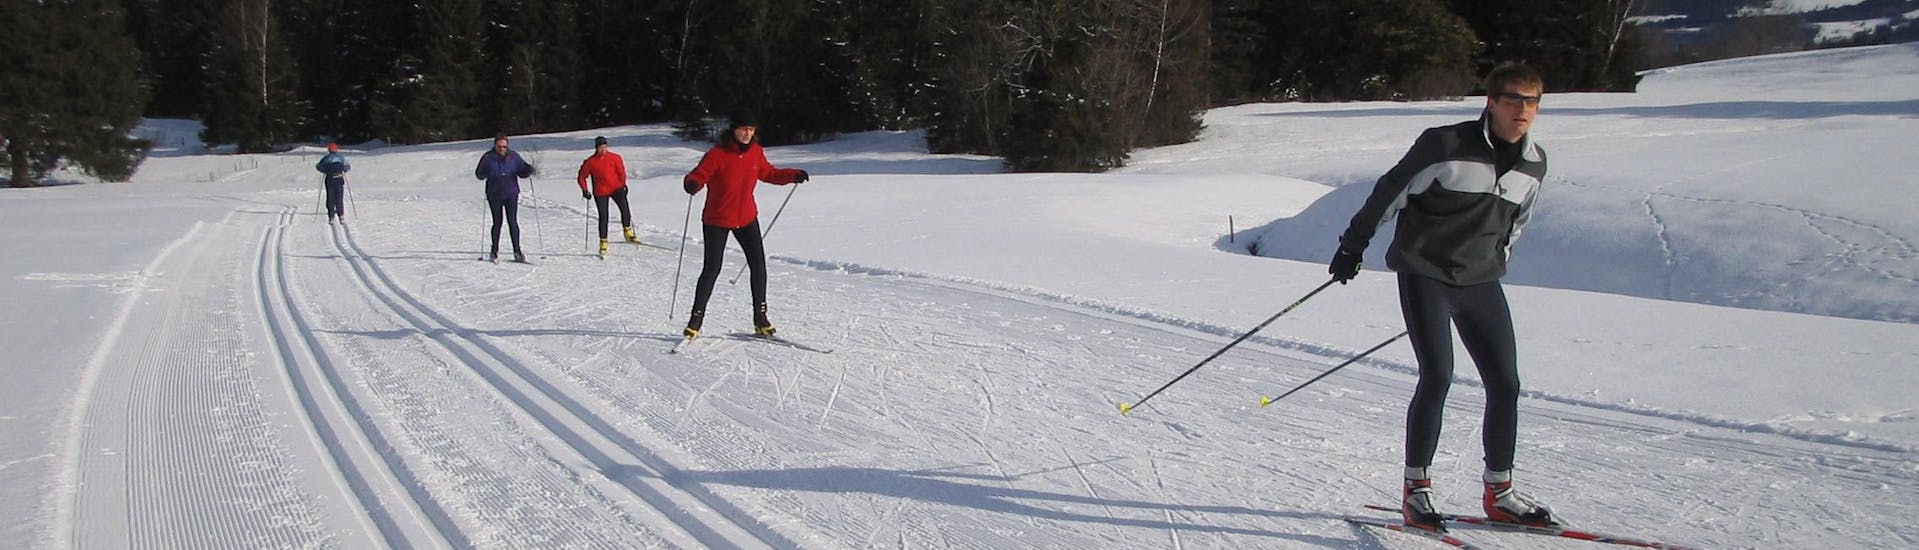 Clases de esquí de fondo a partir de 7 años para todos los niveles.